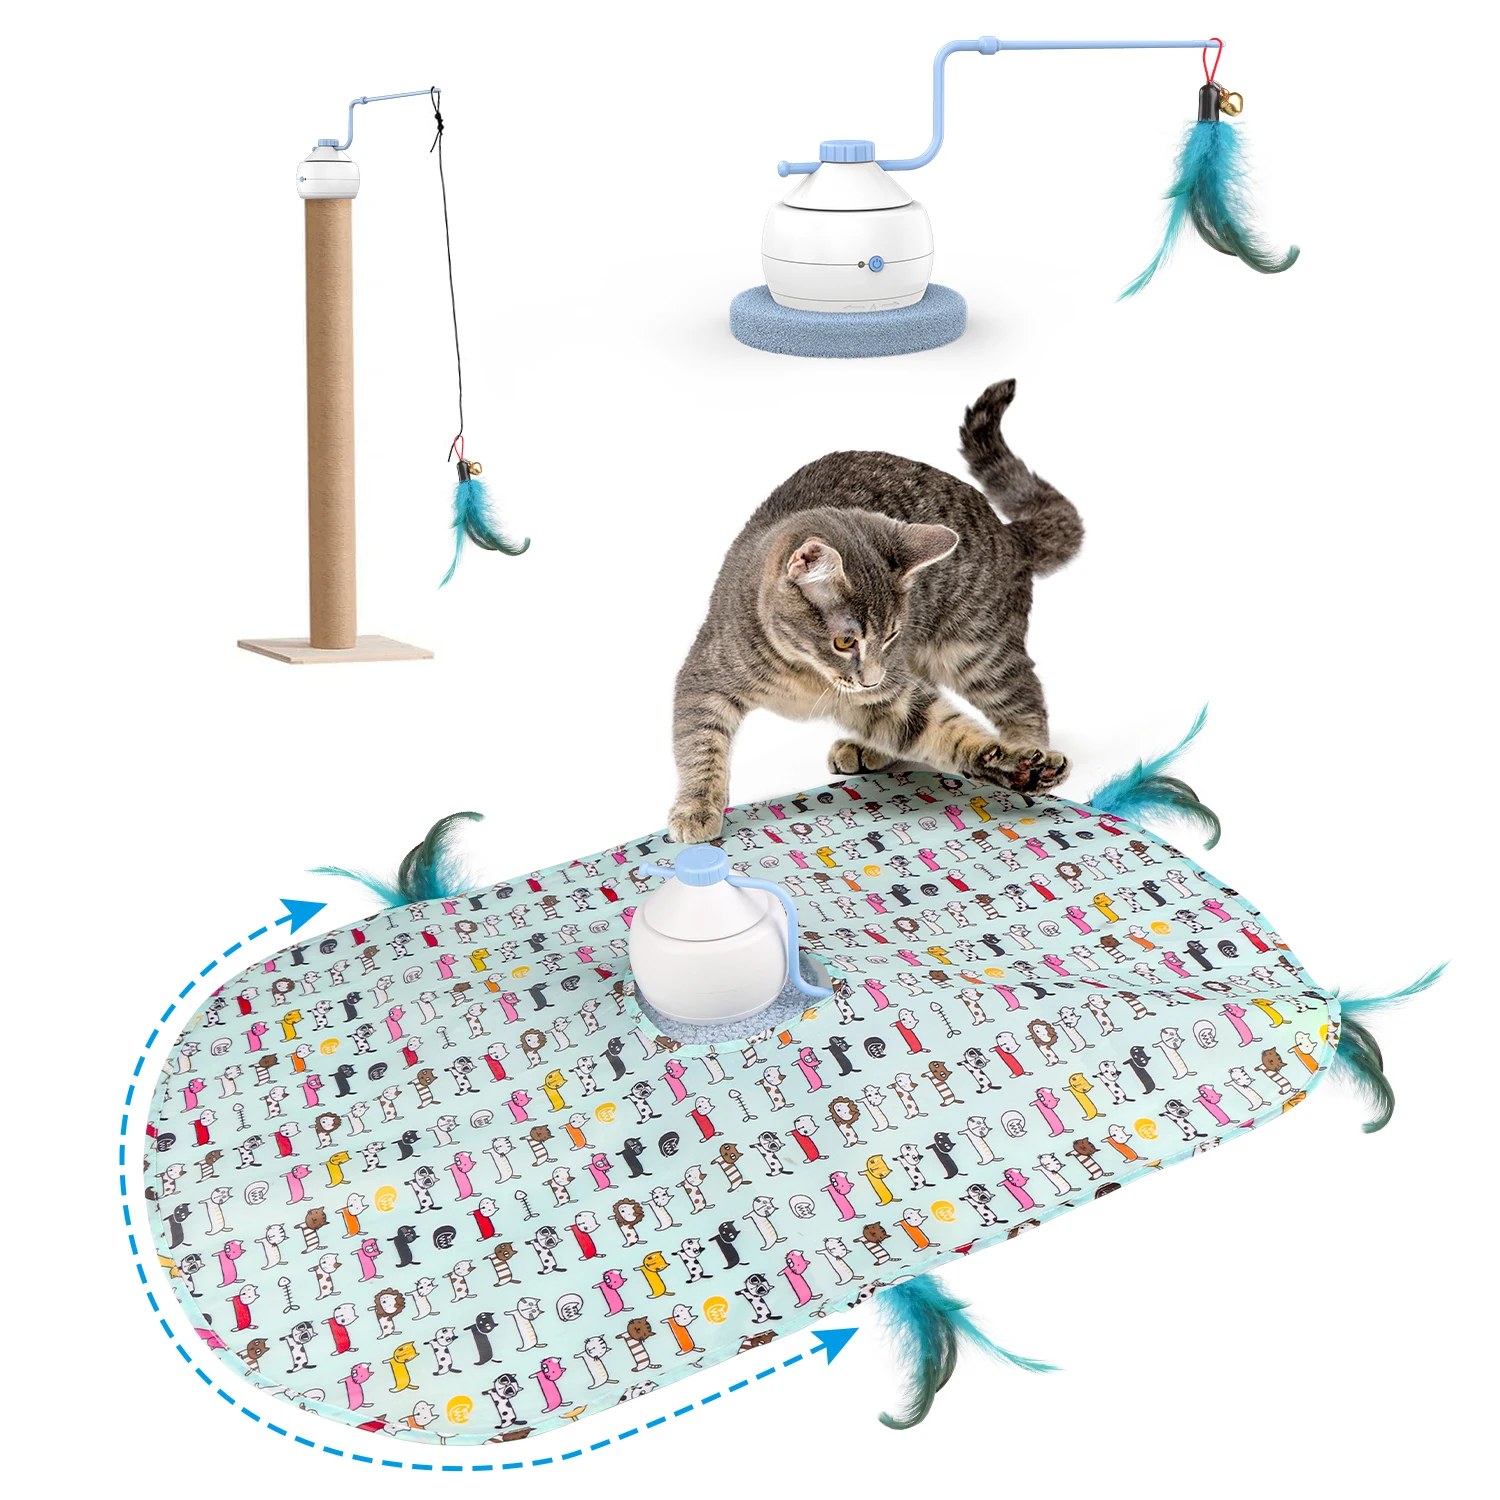 

Интерактивная моторизованная палочка с 3 режимами, игрушки для котят с движением, автоматические игрушки для кошек, электронные упражнения, игрушка для домашних животных для внутреннего искусственного поиска